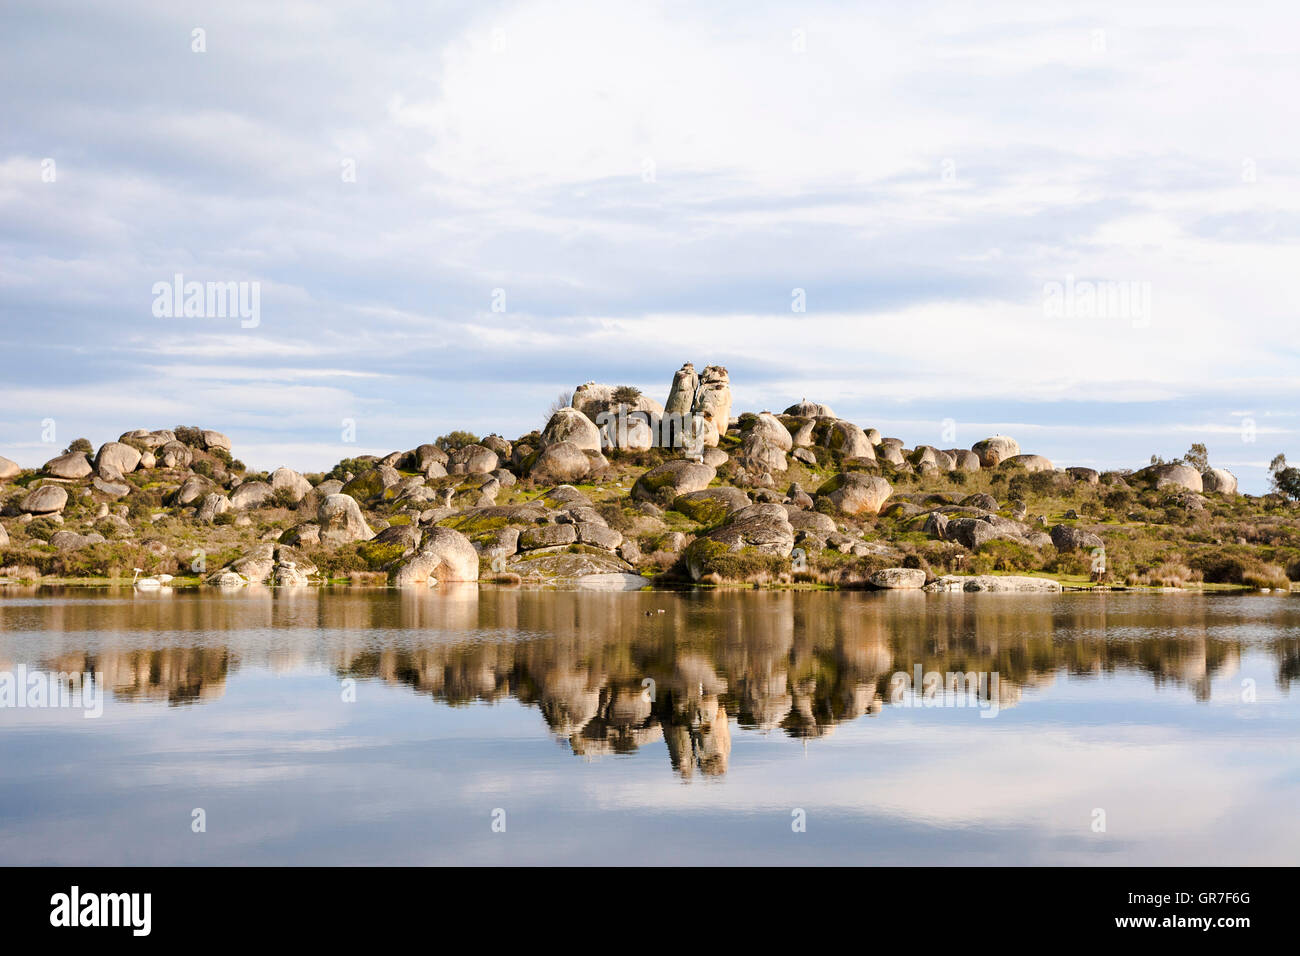 Les roches de granit avec Cigogne Blanche (Ciconia ciconia) niche, los Barruecos Monument naturel, l'Estrémadure, Espagne, Europe Banque D'Images